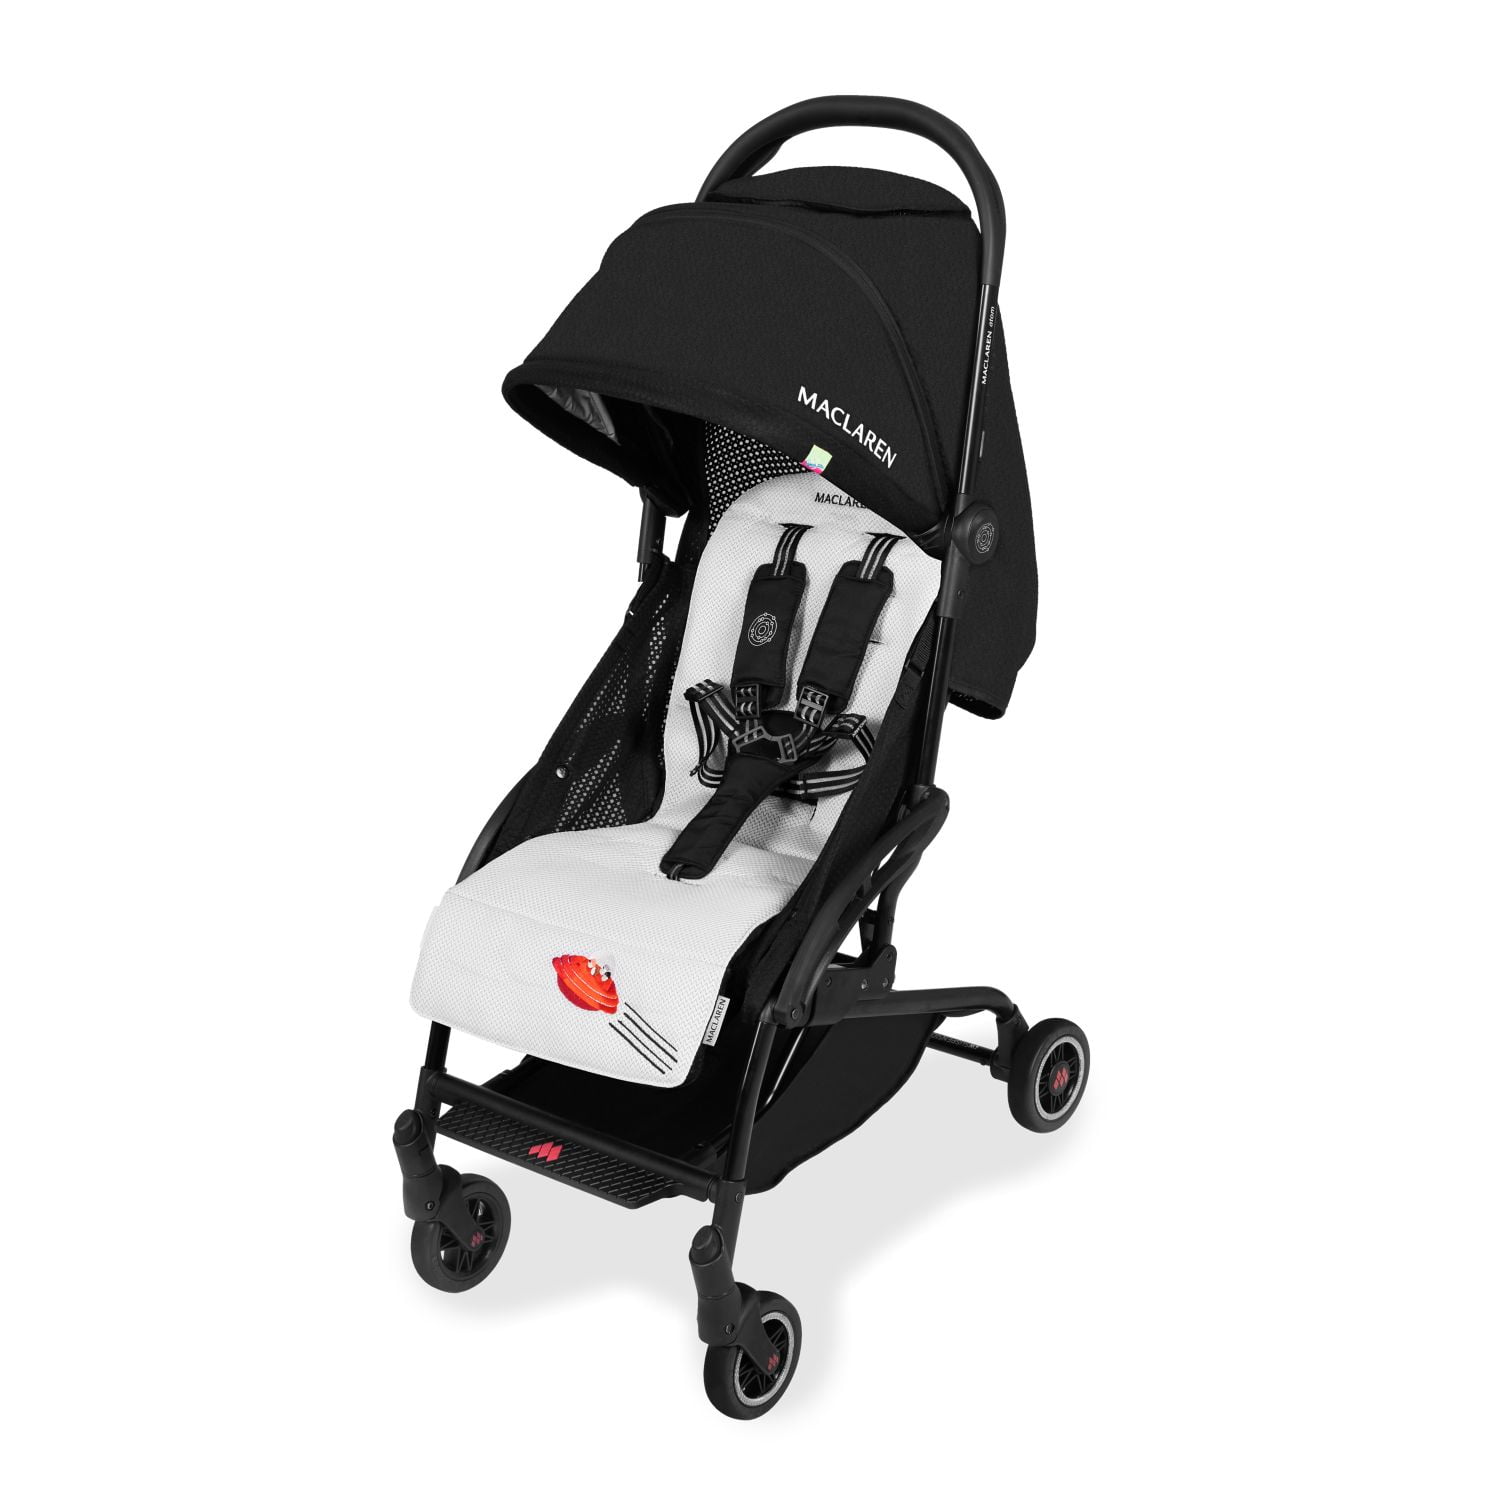 MACLAREN Atom style light stroller black 